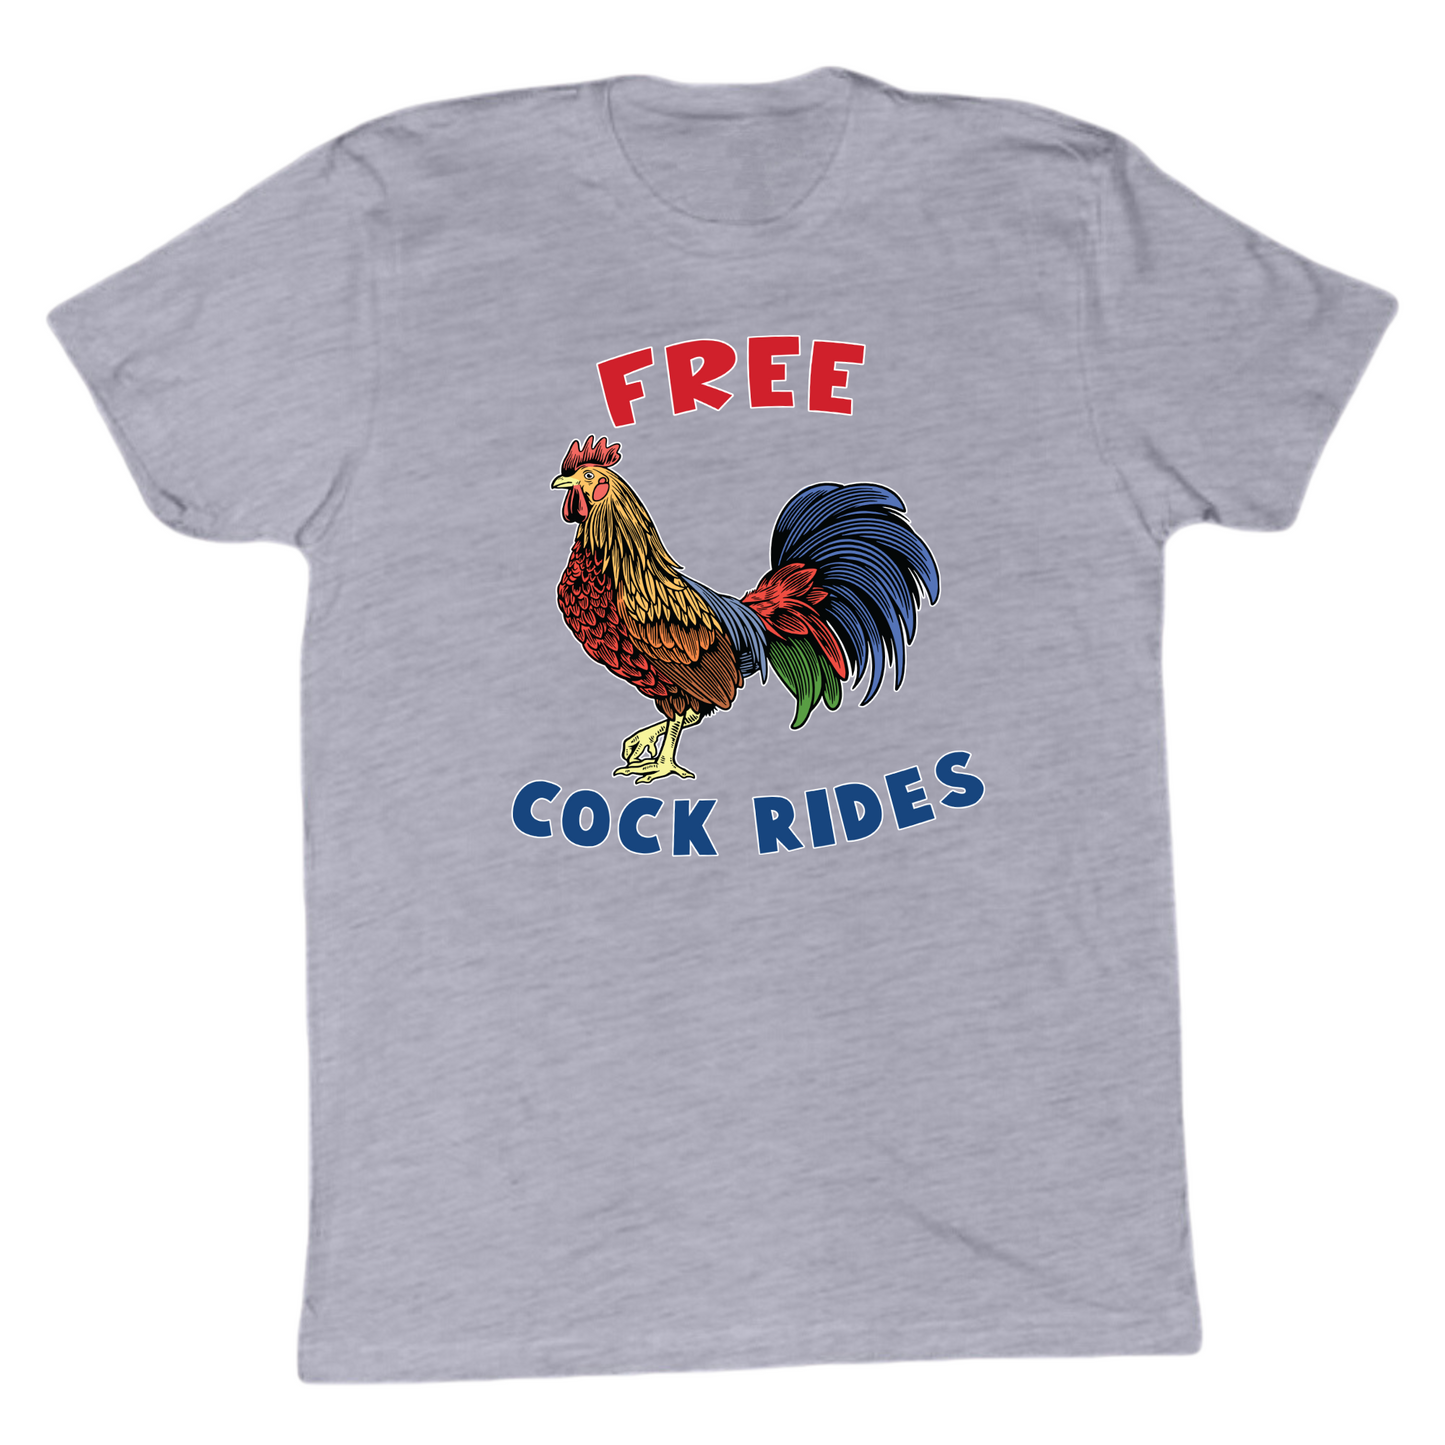 Free Cock Rides Tshirt